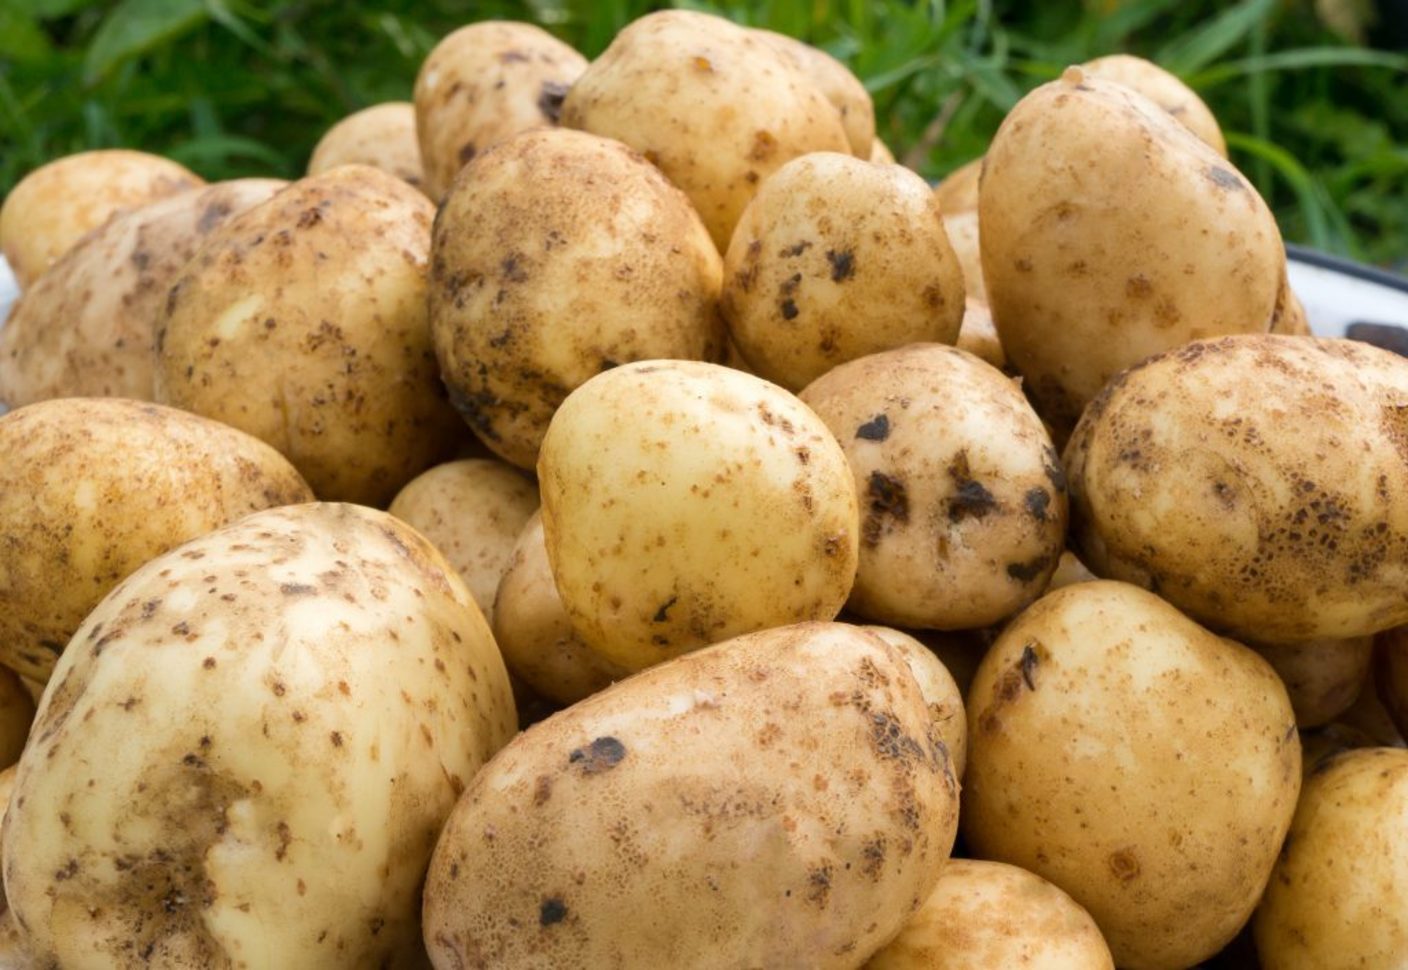 коломбо картофель описание